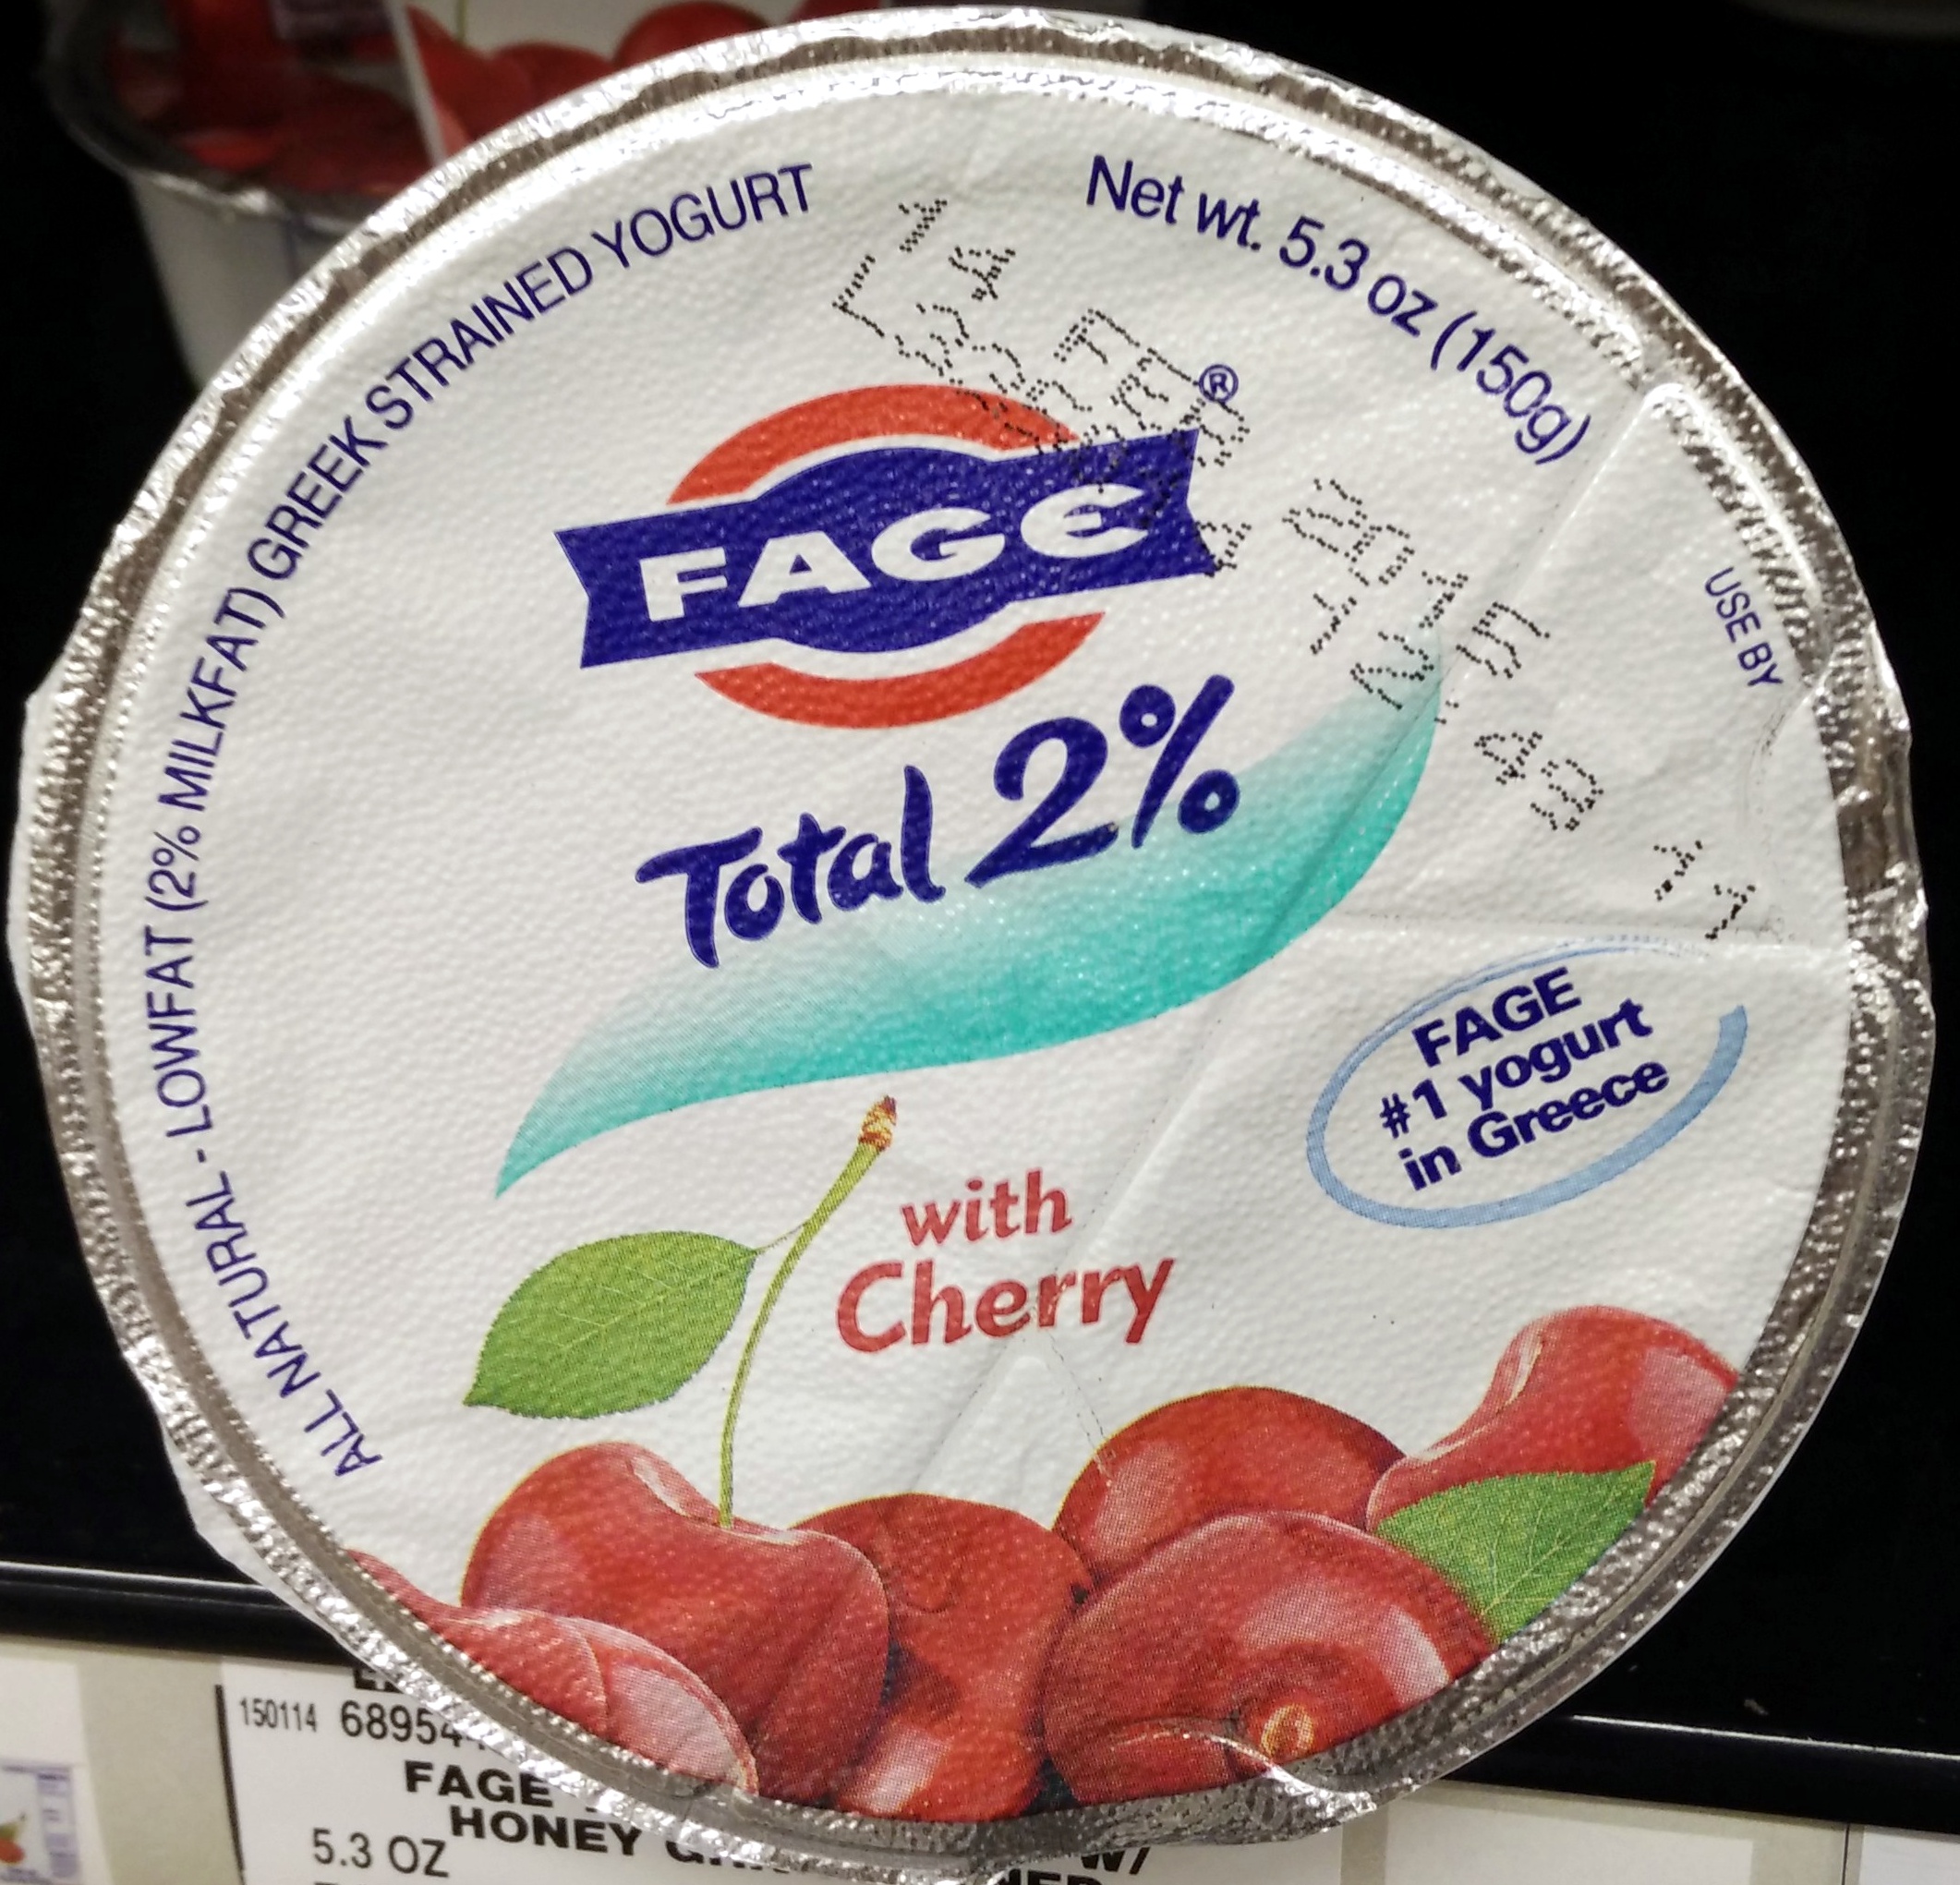 Greek strained yogurt with cherry - Produit - en